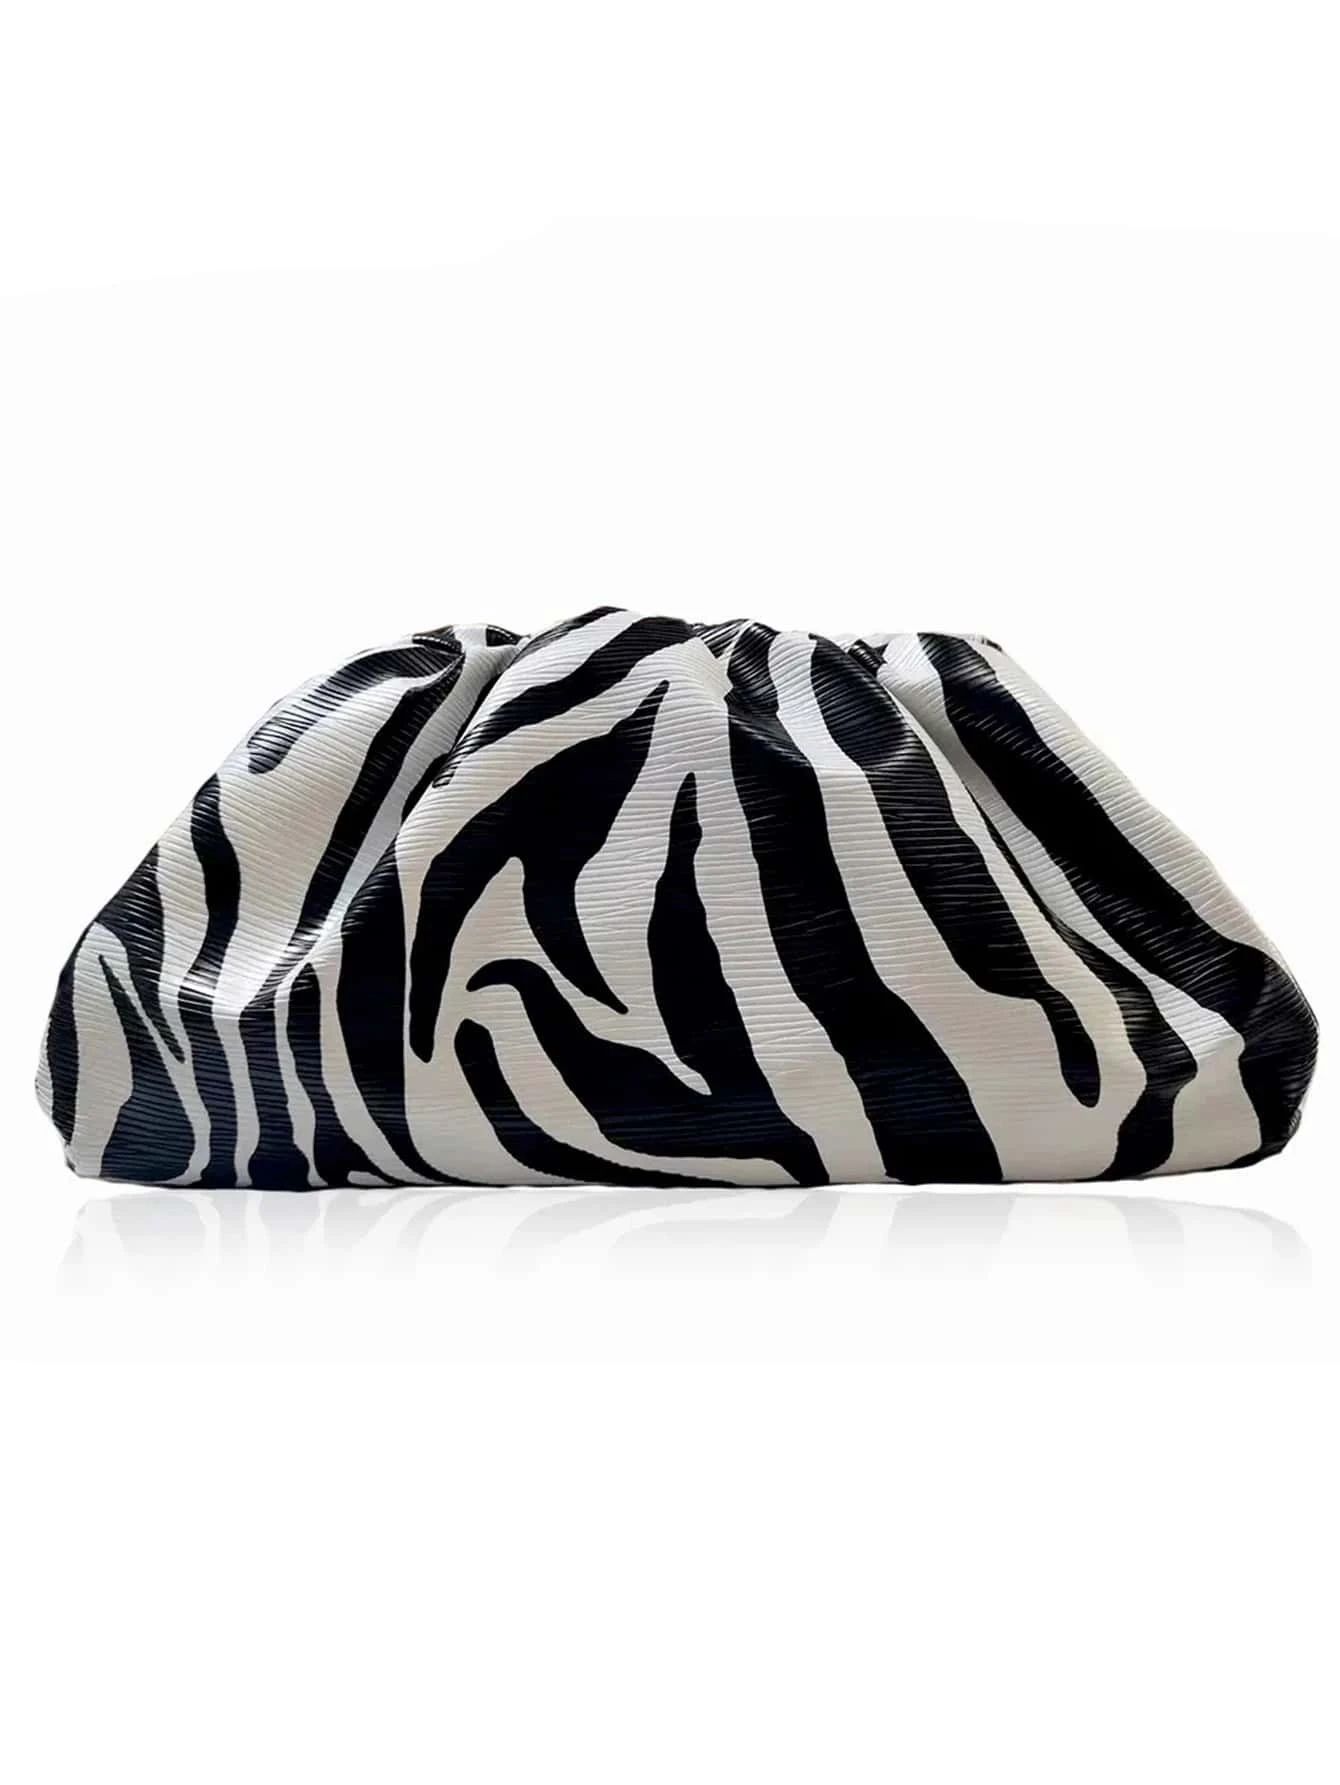 Luxury Dinner Bag, Evening Bag Glamorous, Elegant, Exquisite, Quiet Luxury Zebra Striped Pattern ... | SHEIN